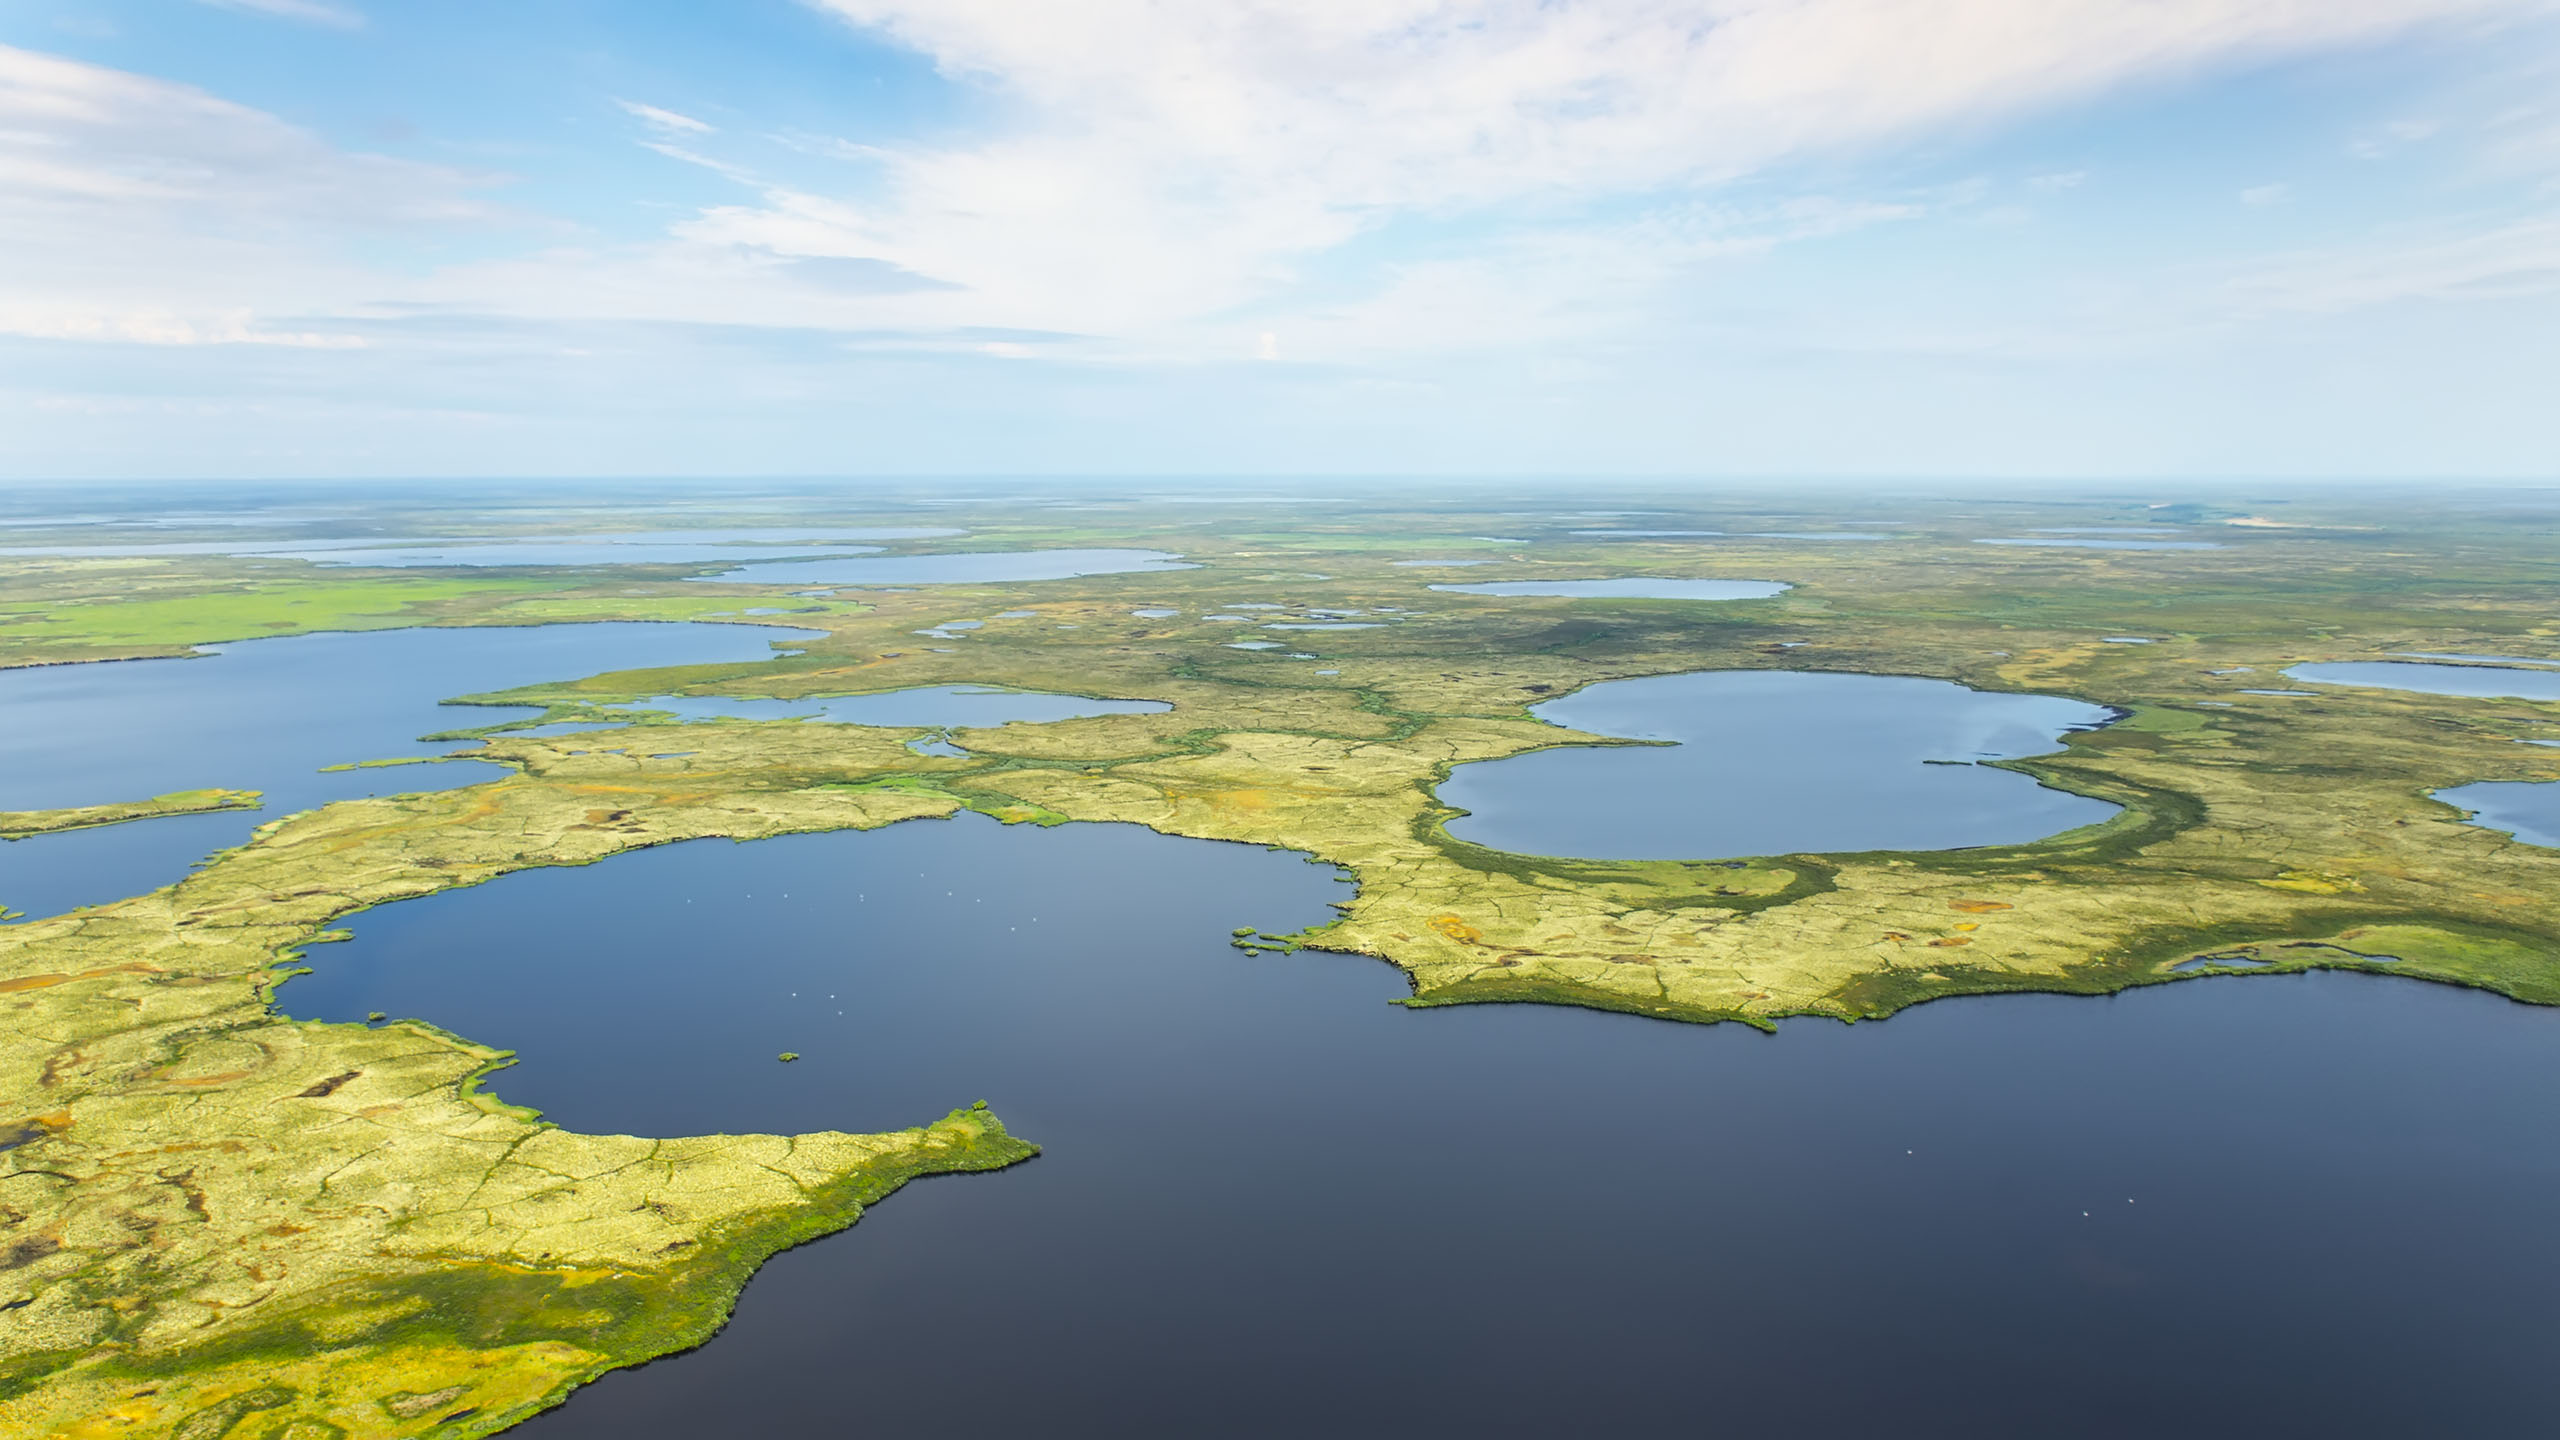 Крупнейшие озера русской равнины